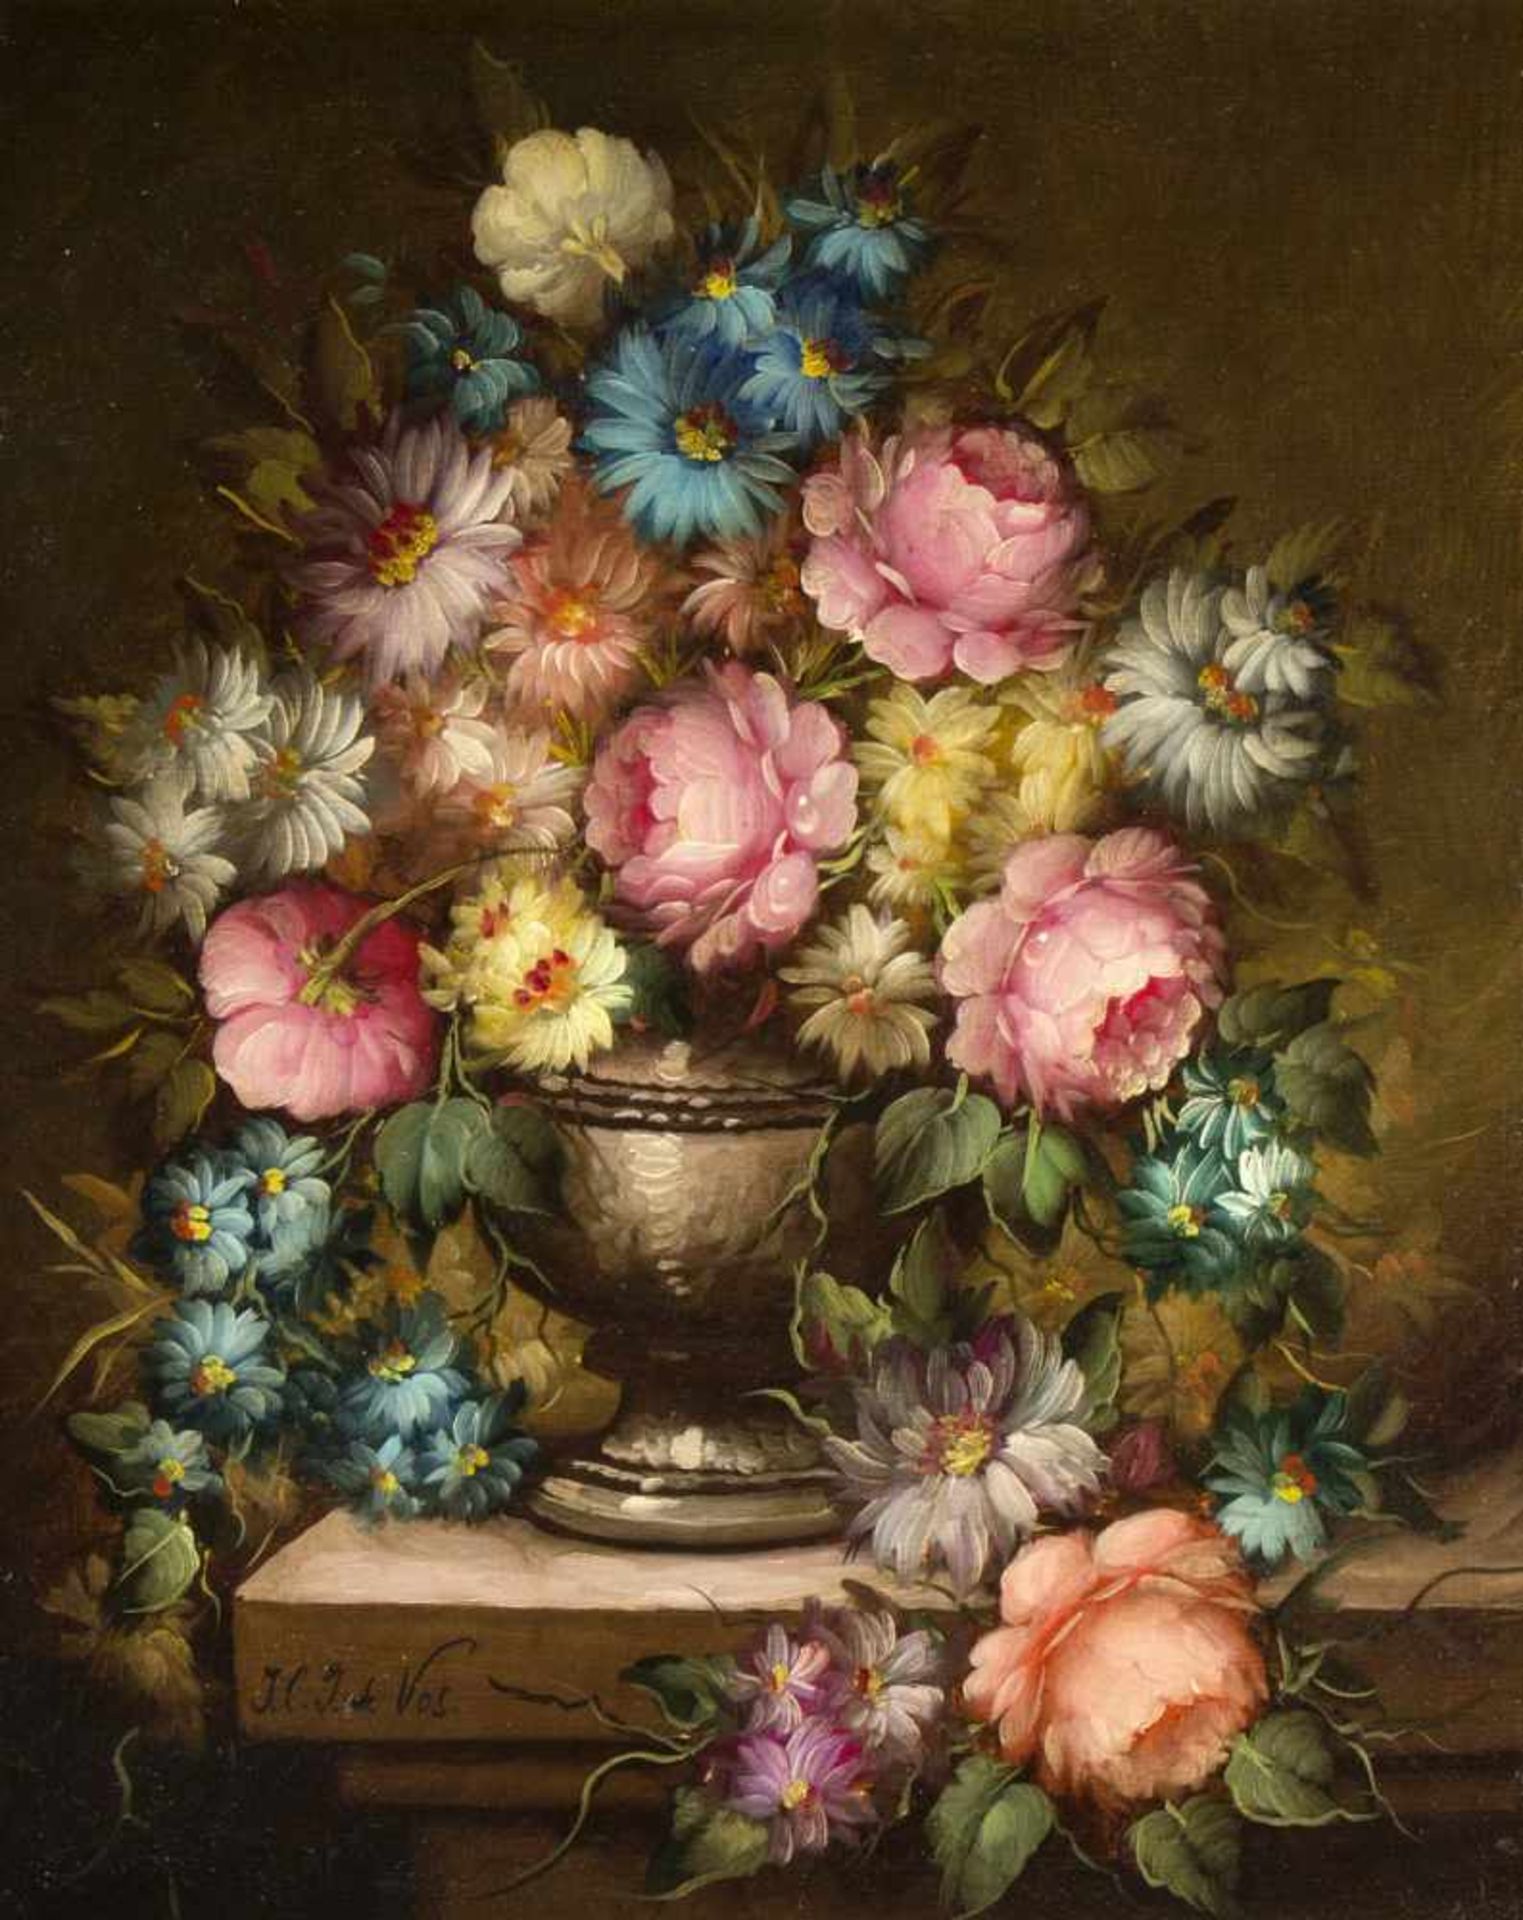 Vos, J.C. deStillleben mit Sommerblumen. Öl/Lwd., auf Holz aufgezogen. Sign. 50 x 40 cm. Gerahmt.